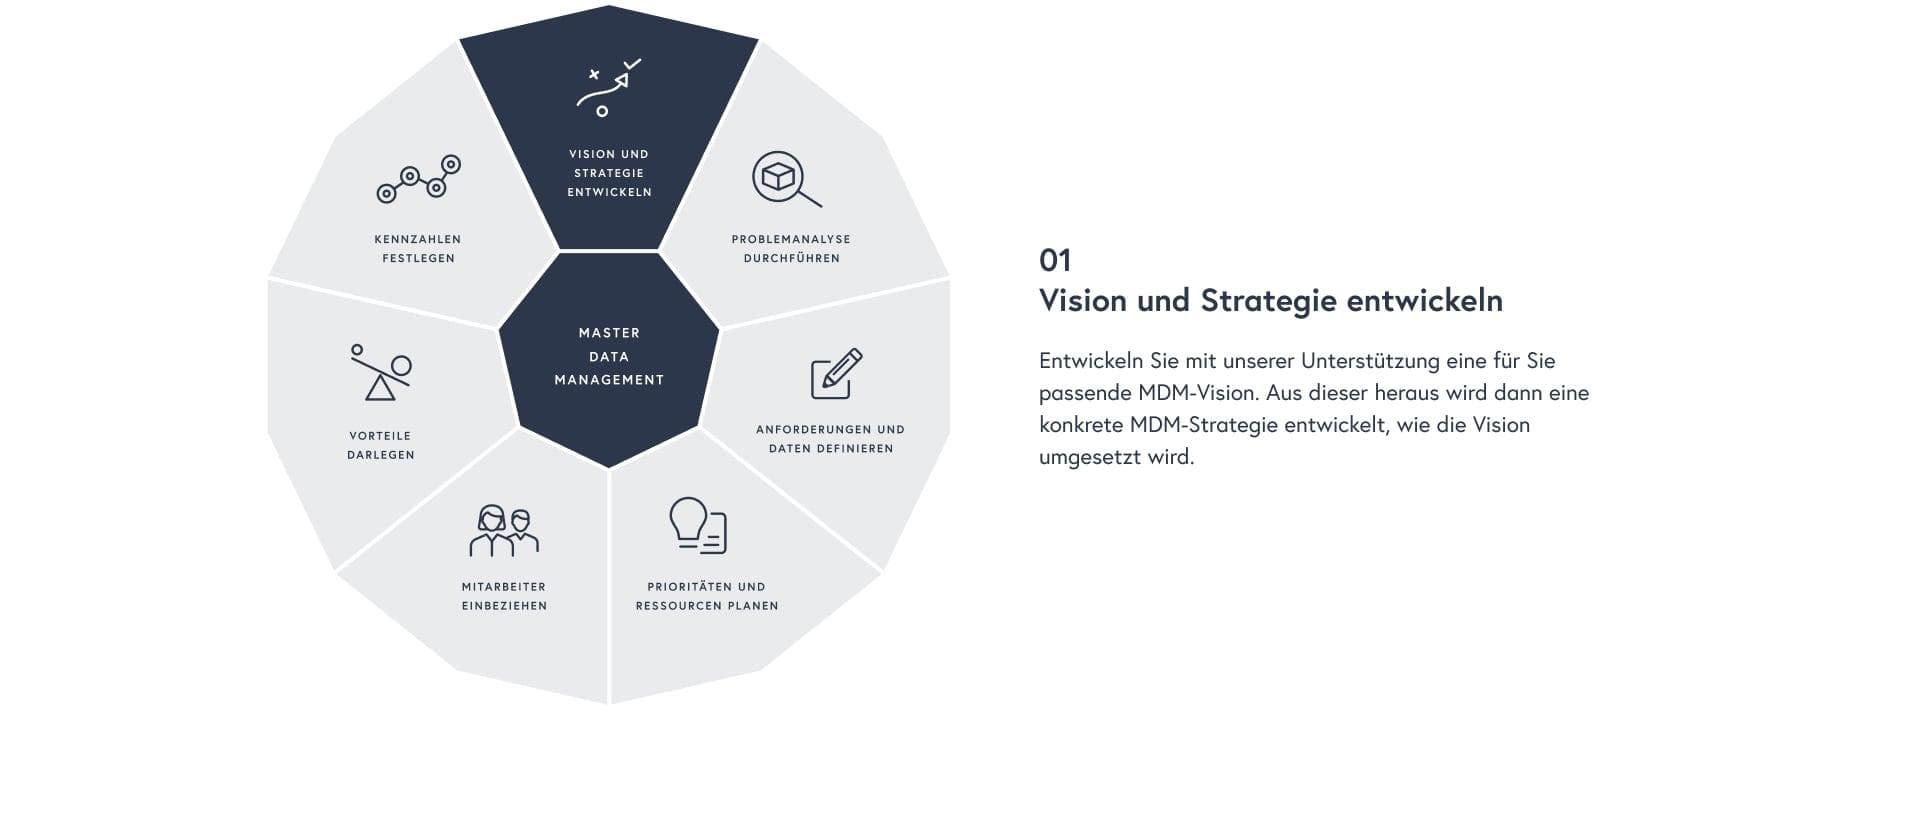 Vision und Strategie entwickeln: Entwickeln Sie mit unserer Unterstützung eine für Sie passende MDM-Vision. Aus dieser heraus wird dann eine konkrete MDM-Strategie entwickelt, wie die Vision umgesetzt wird.